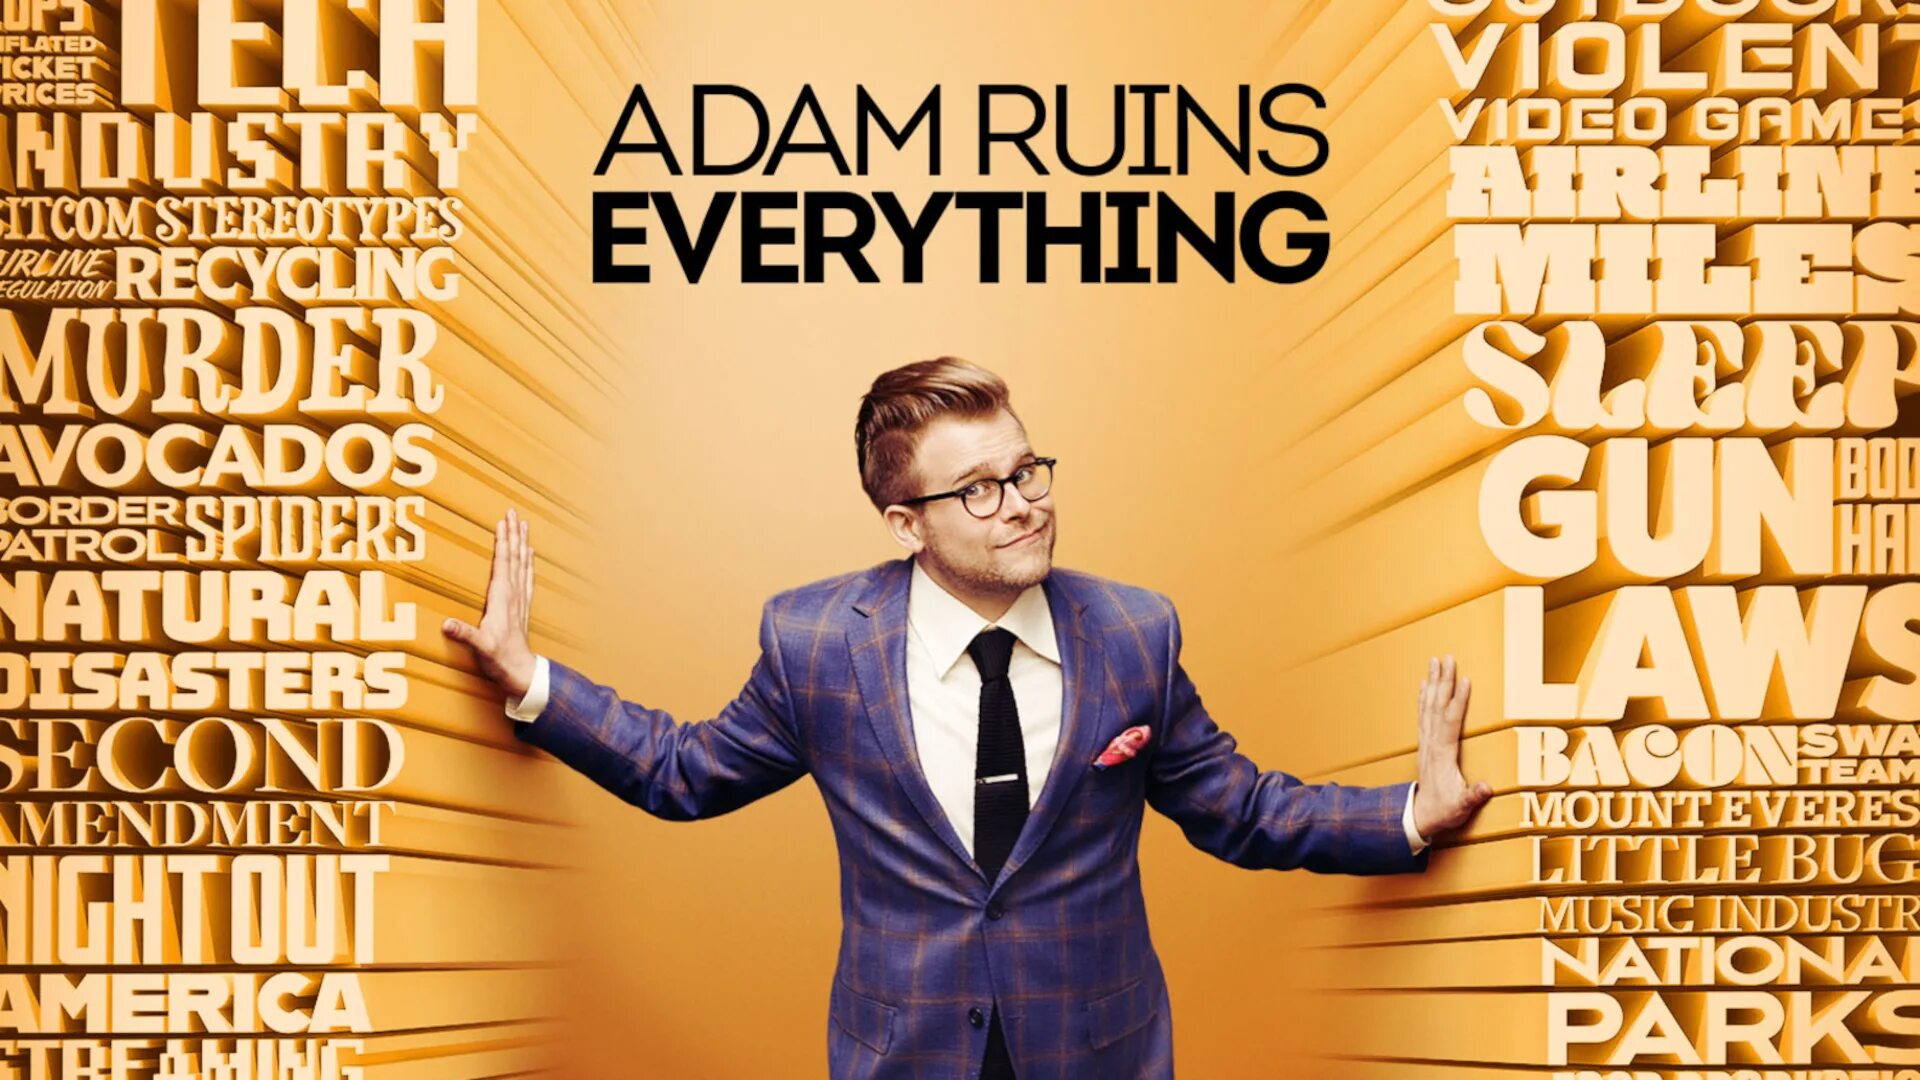 Adam Ruins everything. Adam Ruins everything демократические выборы.